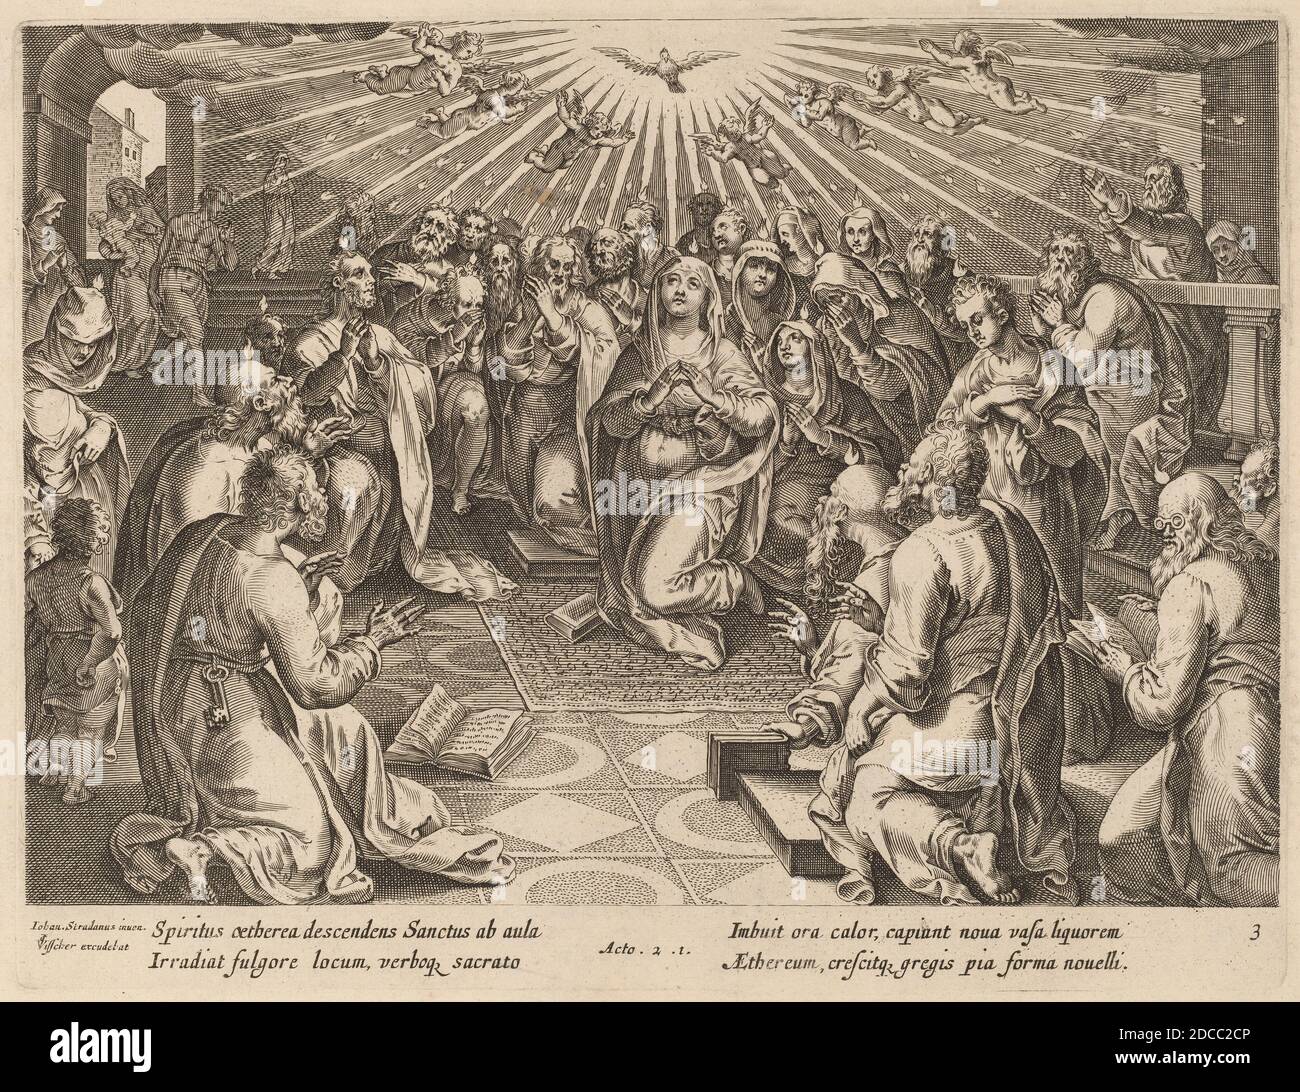 Philip Galle, (Künstler), Flämisch, 1537 - 1612, Jan van der Straet, (Künstler nach), Flämisch, 1523 - 1605, Pfingsten, Apostelgeschichte, (Serie), Gravur Stockfoto